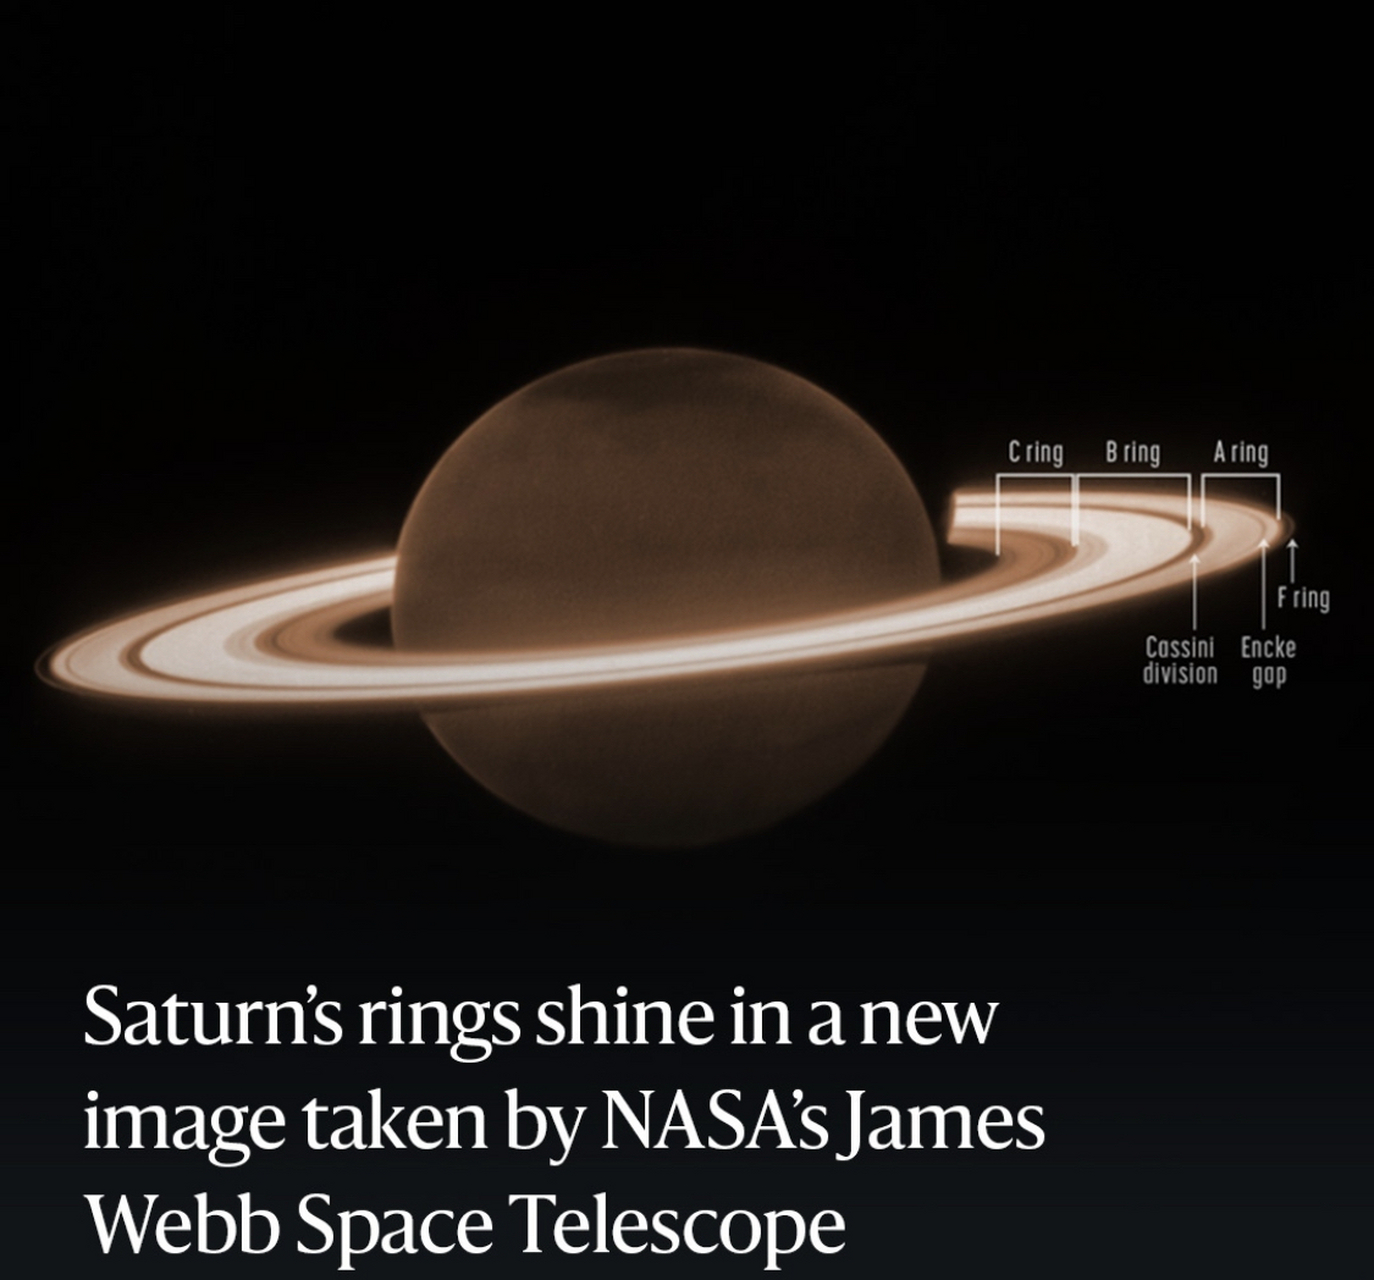 土星光环照片图片